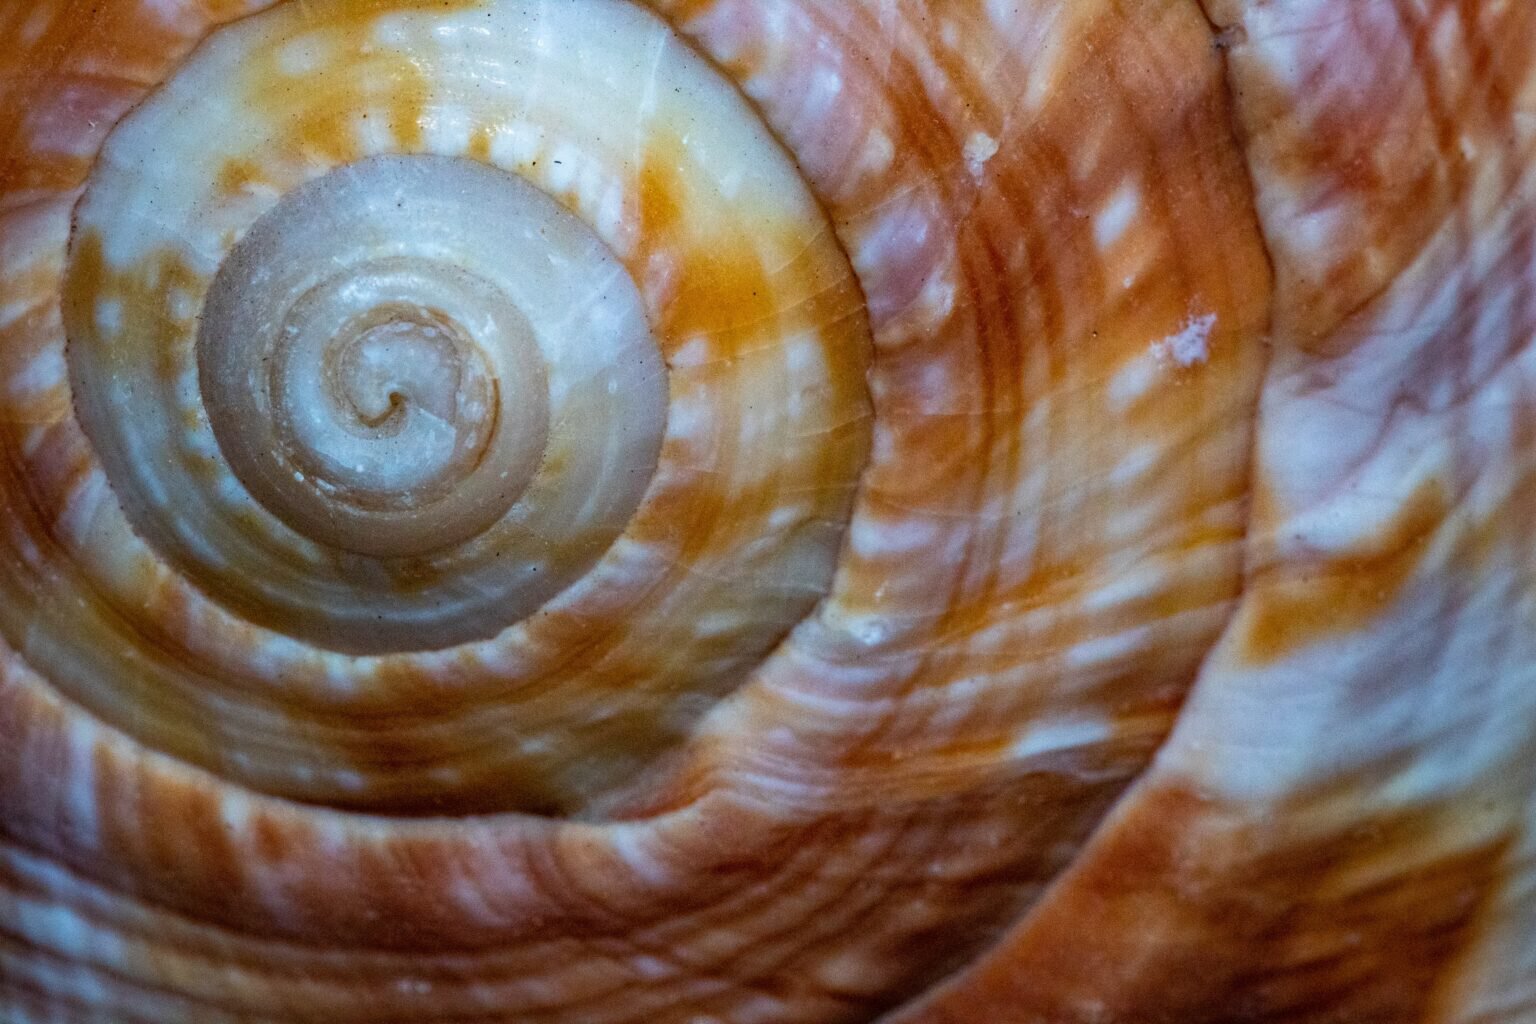 golden ratio shell spiral